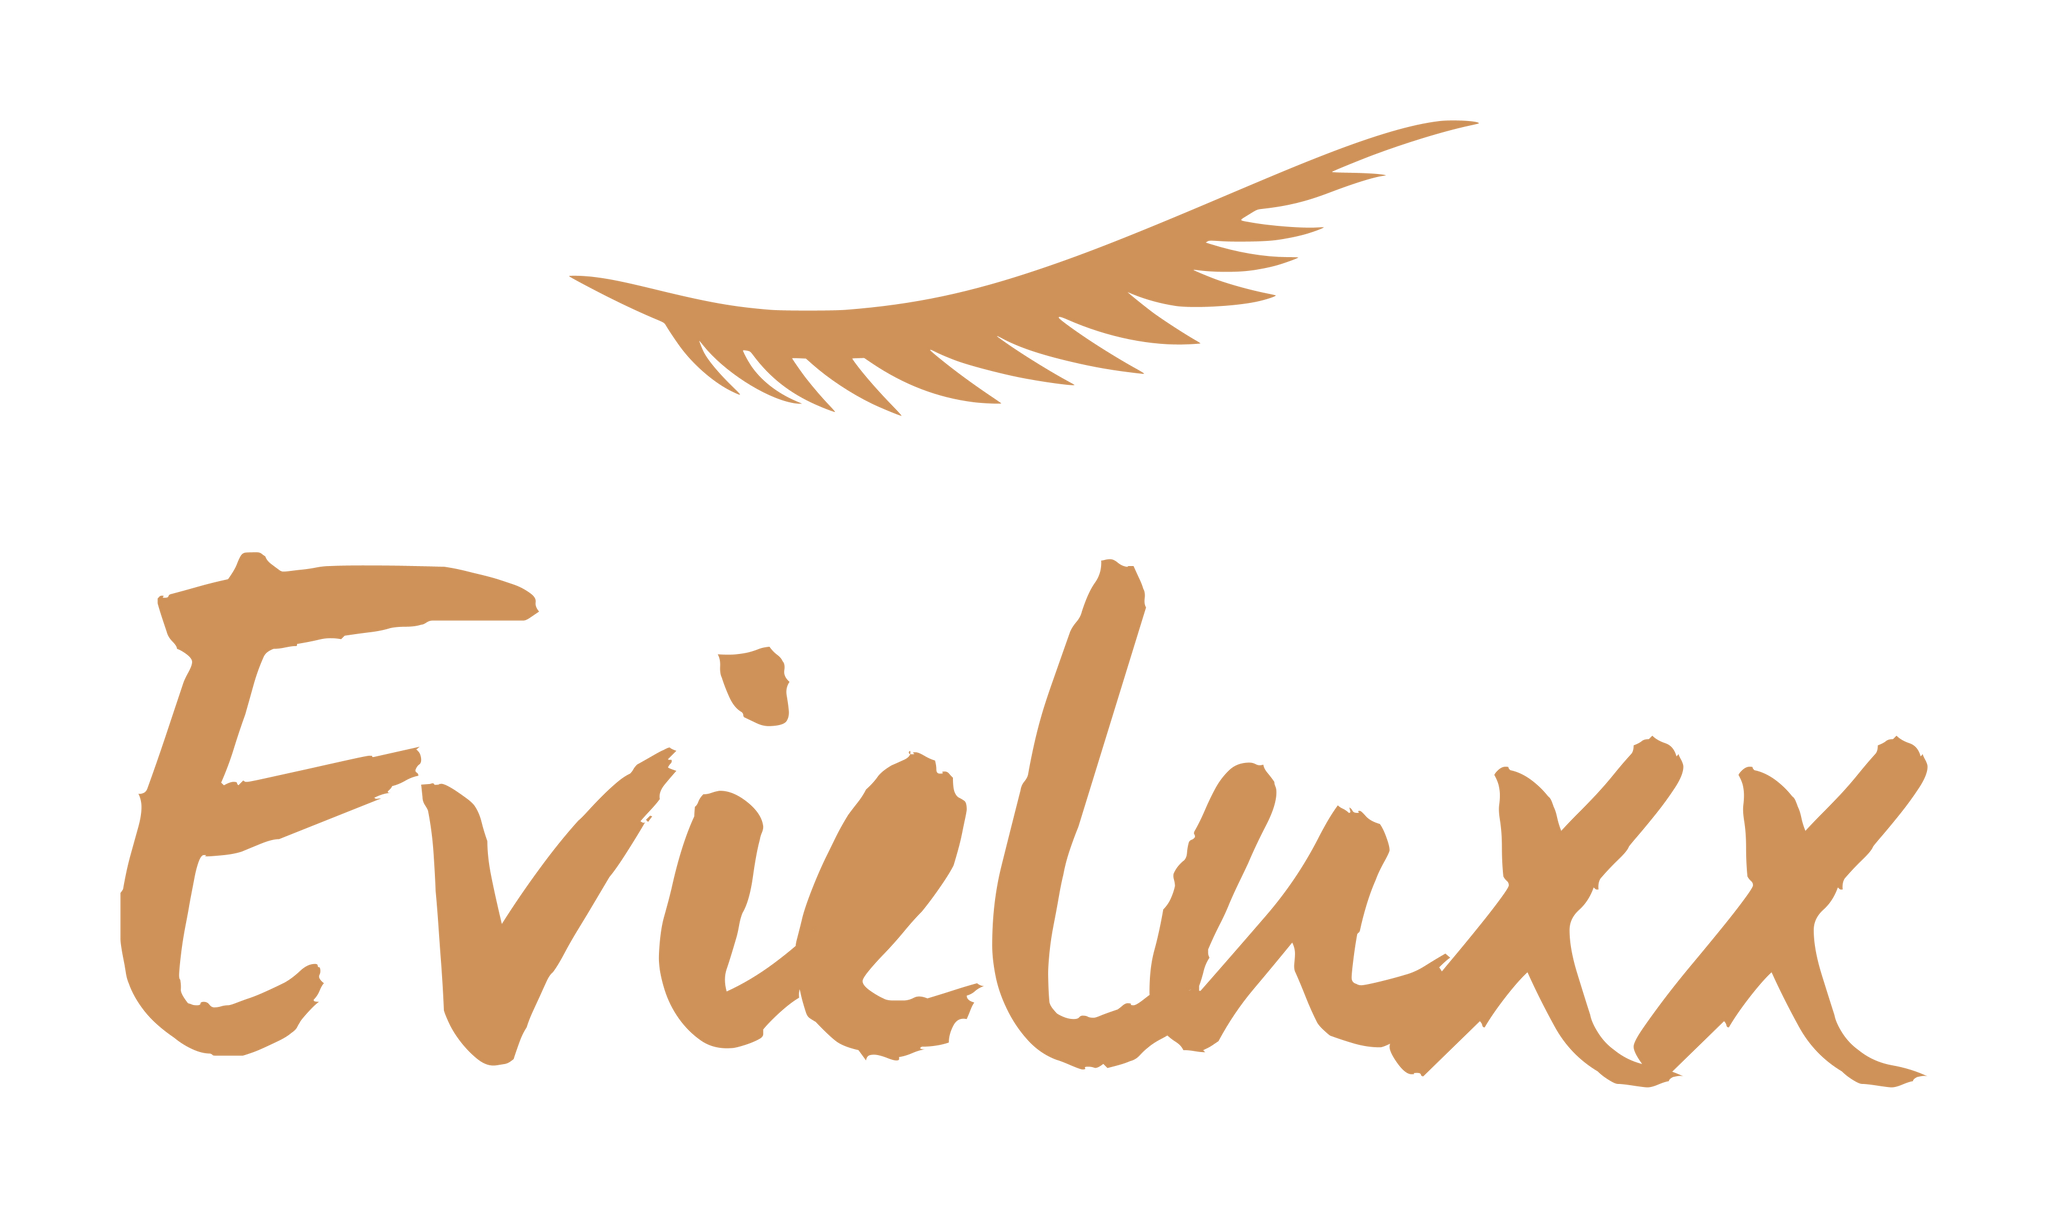 Evieluxx